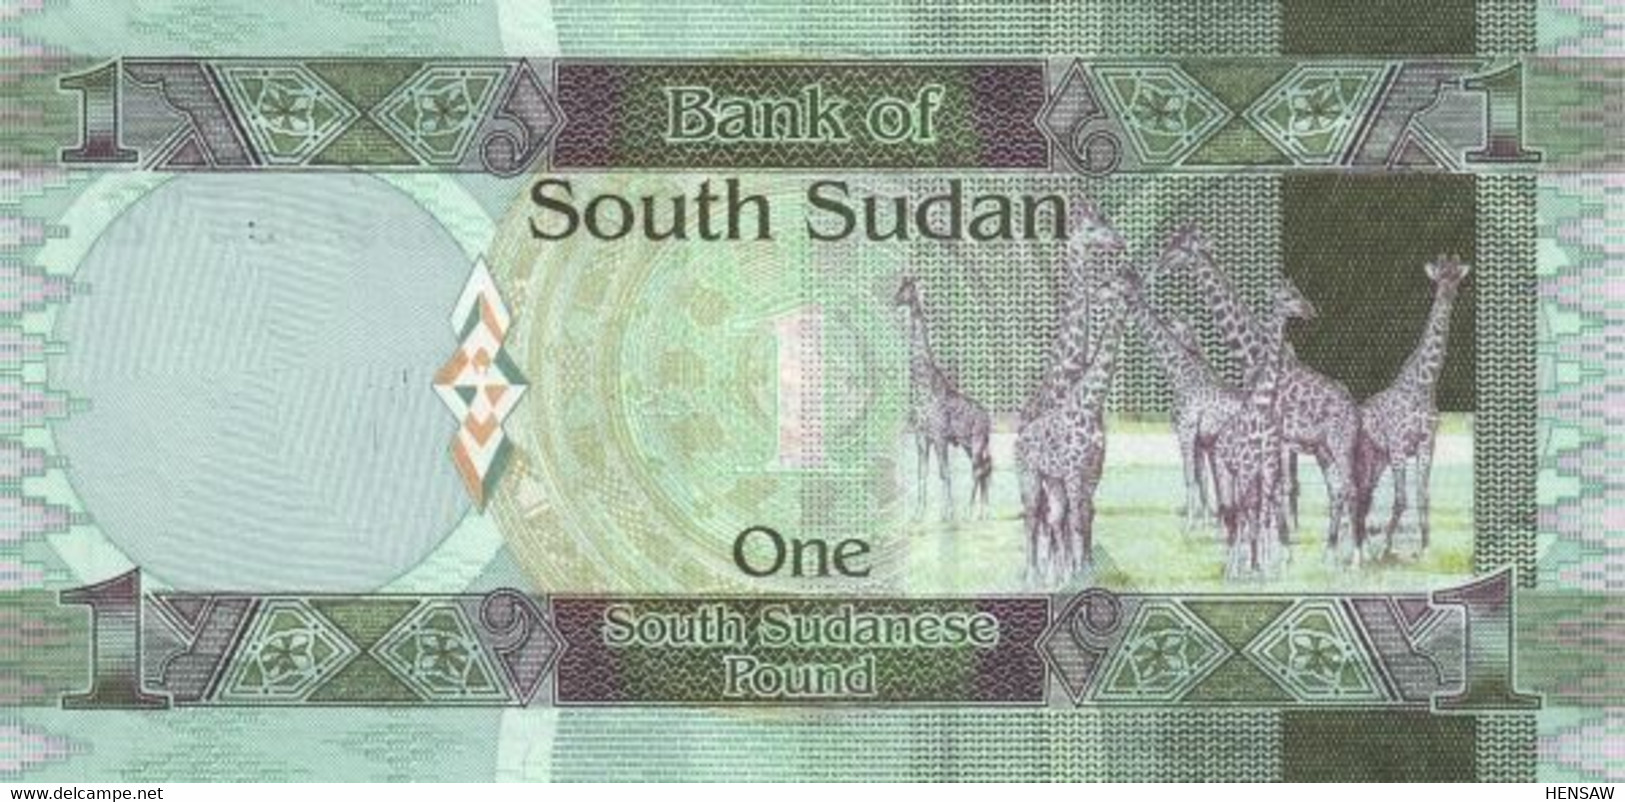 SOUTH SUDAN DEL SUR 1 POUND 2011 P 5 UNC SC NUEVO - South Sudan